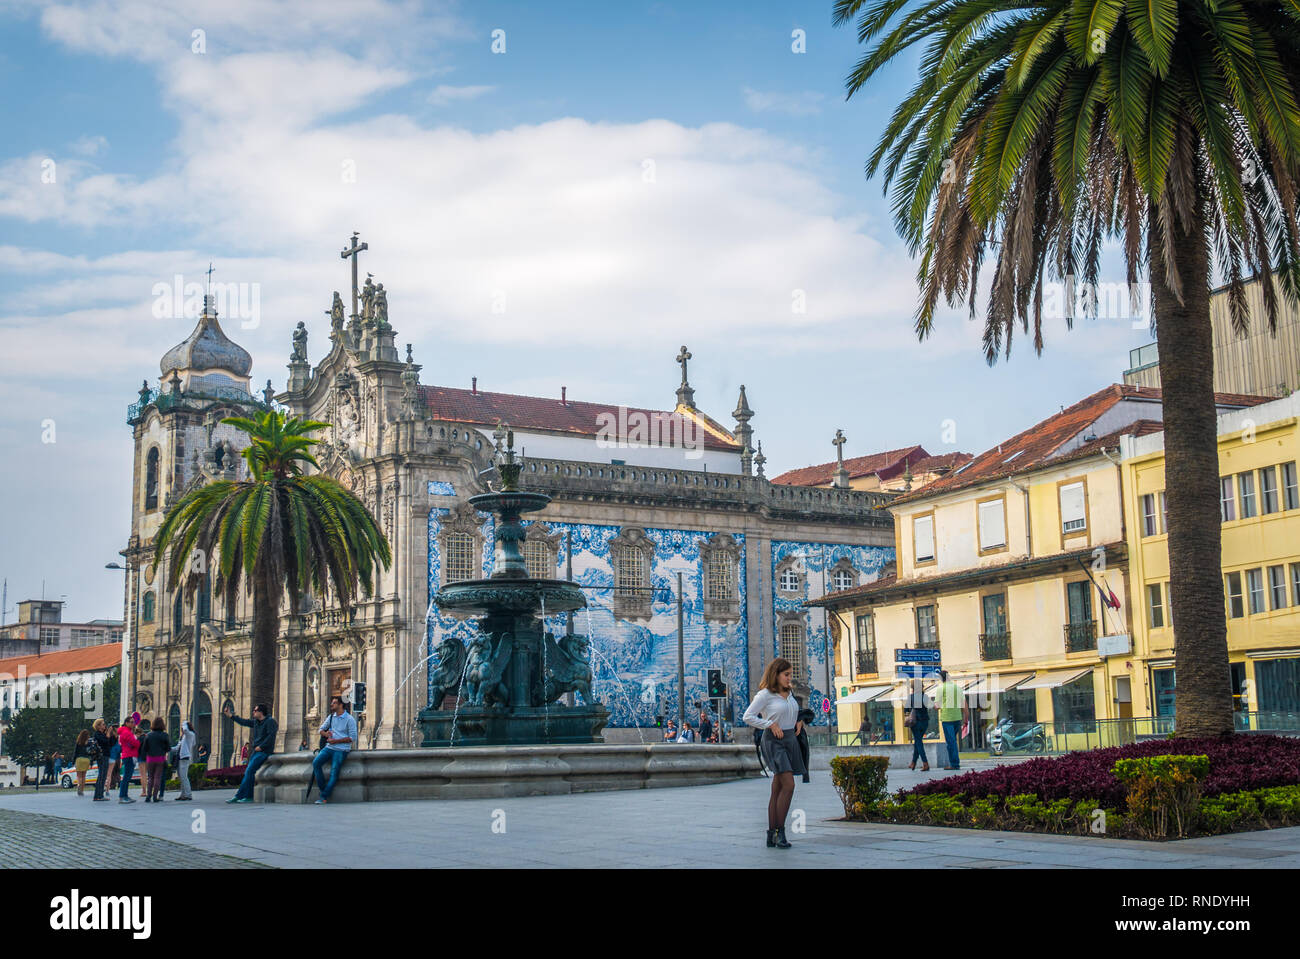 Altstadt Blick auf Touristen Palmen und Carmelitas Kirche mit berühmten portugiesischen Kacheln in Porto im Norden Portugals. Stockfoto